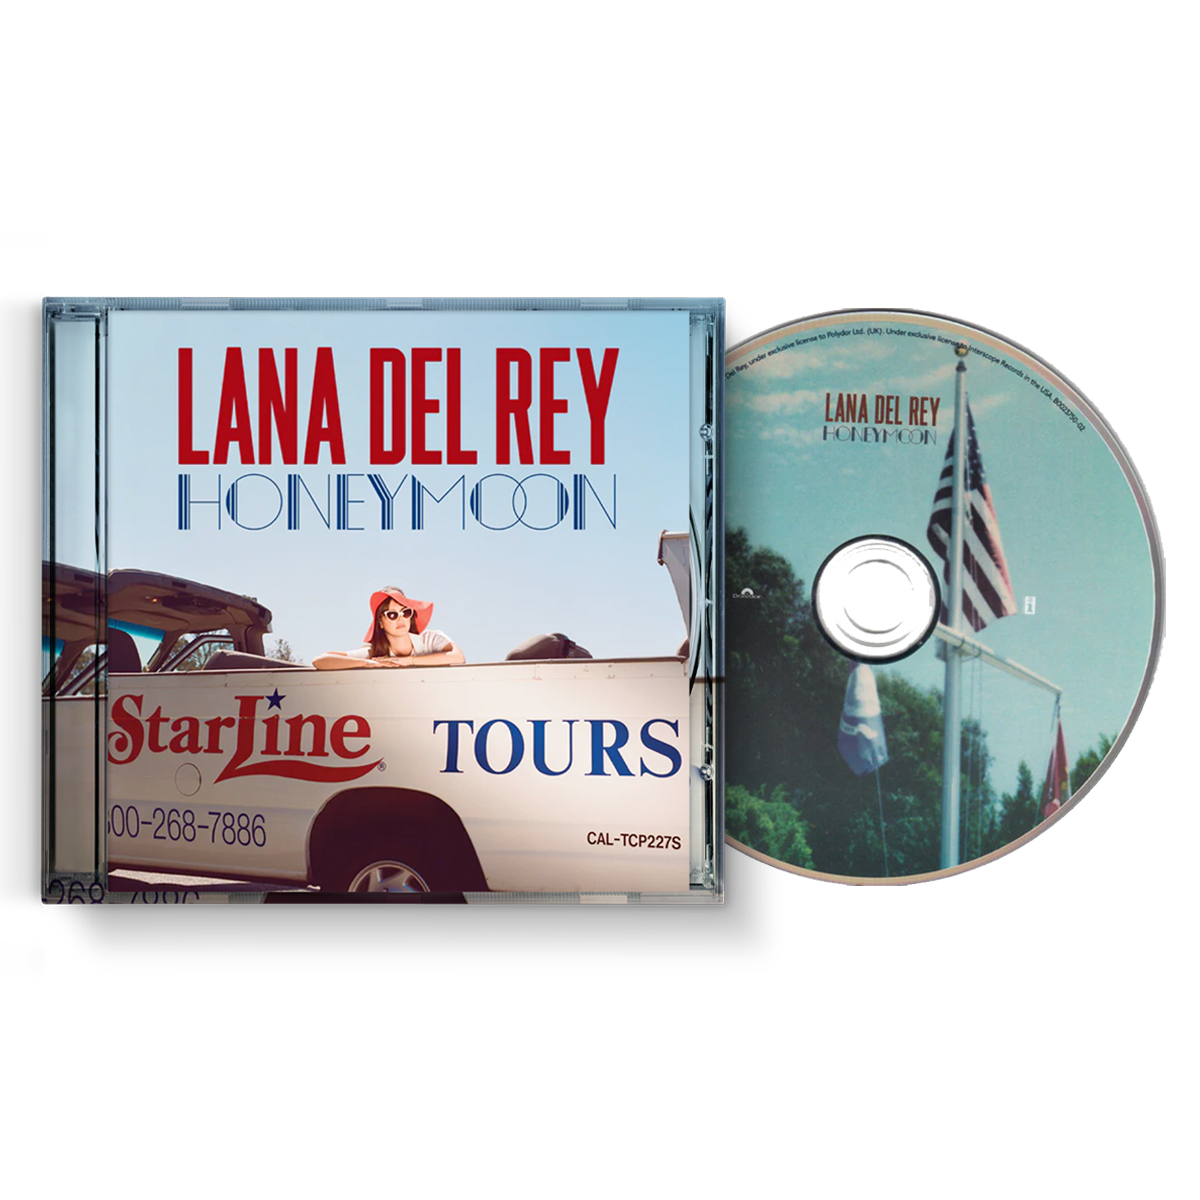 LANA DEL REY - Polydor Store UK